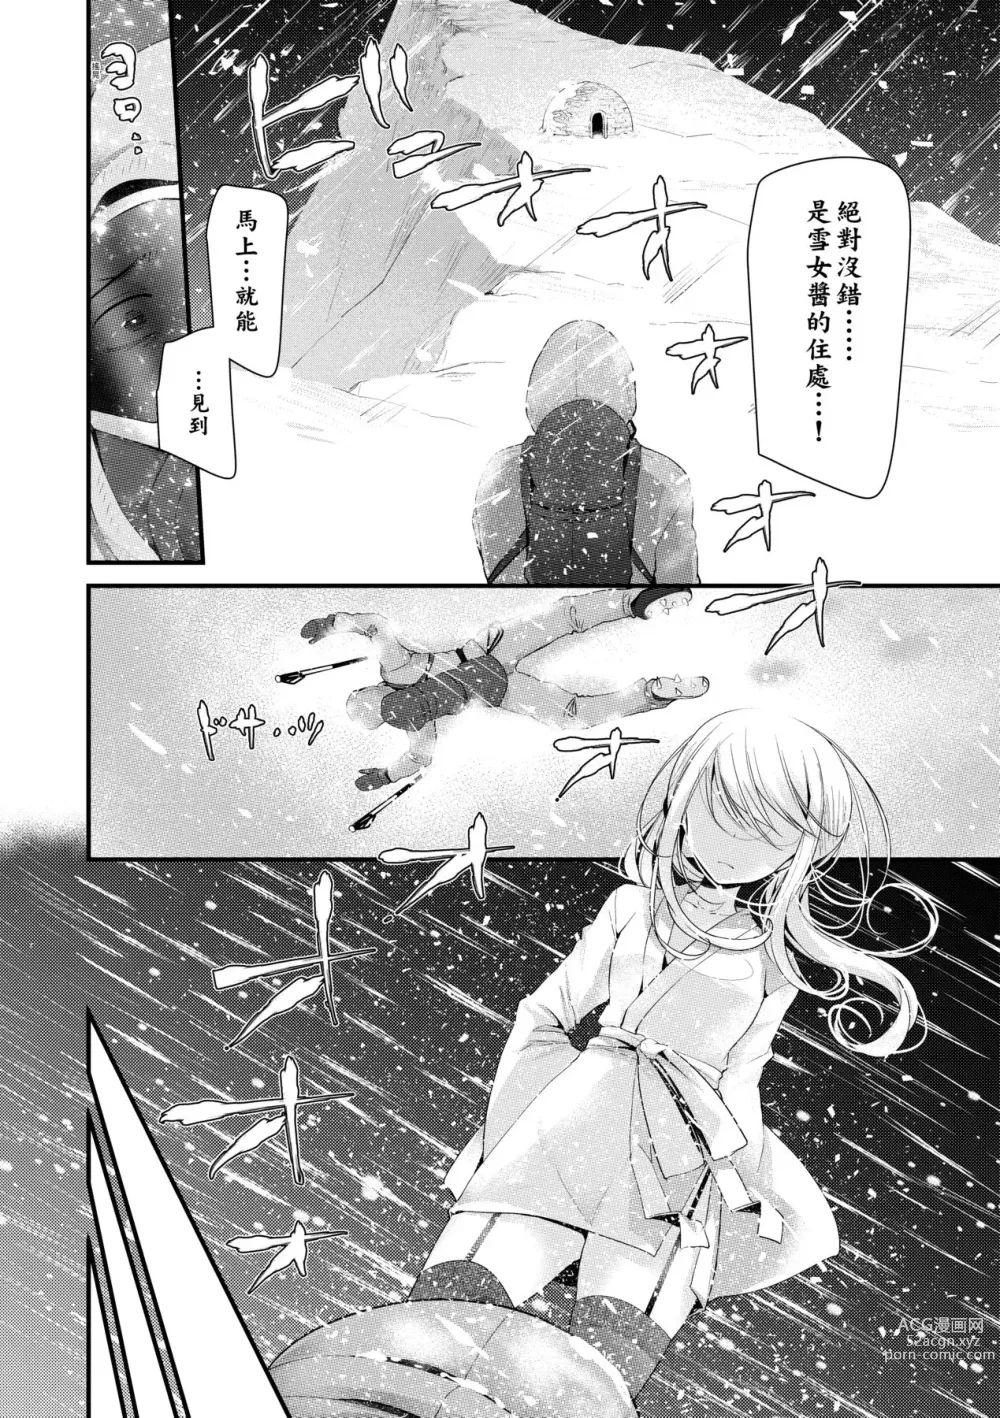 Page 7 of manga 年上的少女你也很喜歡吧? (decensored)